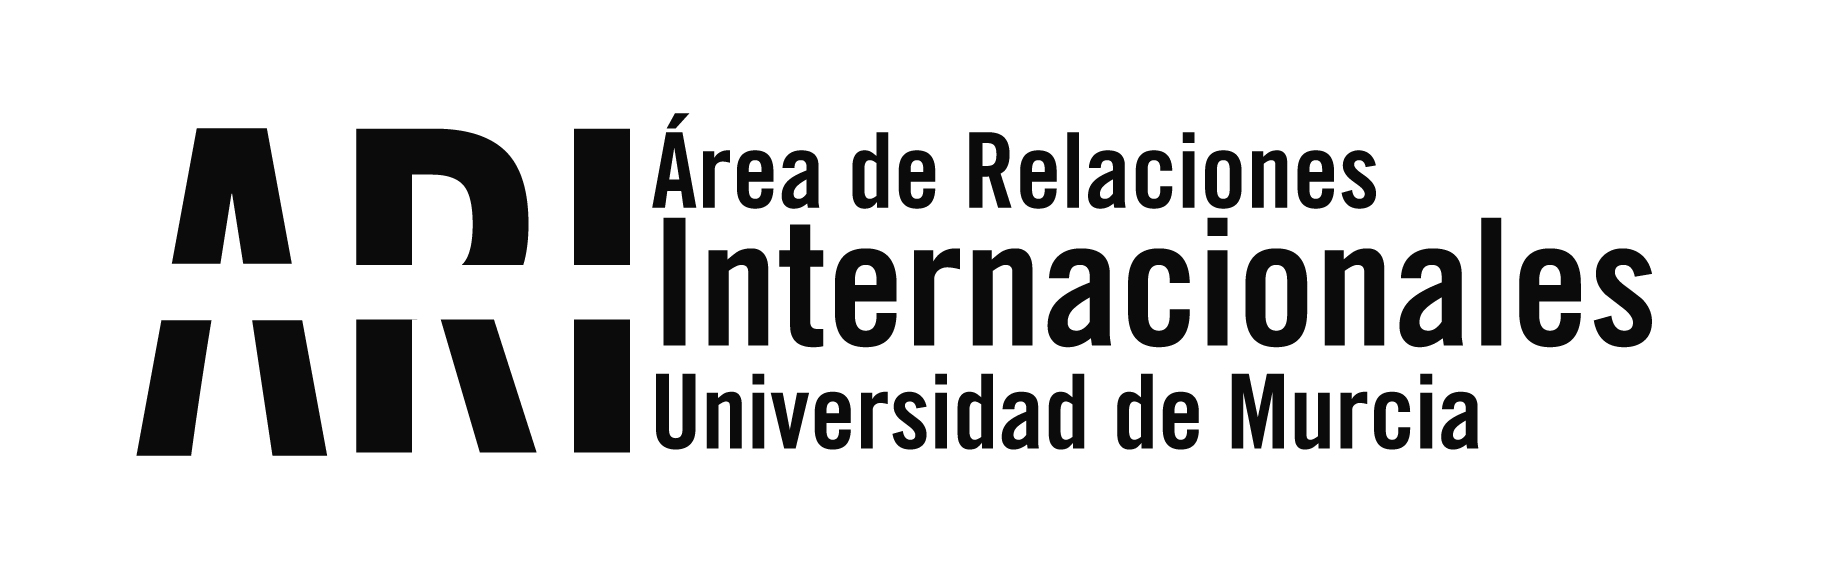 XIV Concurso de Relato Corto de la Universidad de Murcia dotado con 10.000 euros en premios - Área de Relaciones Internacionales